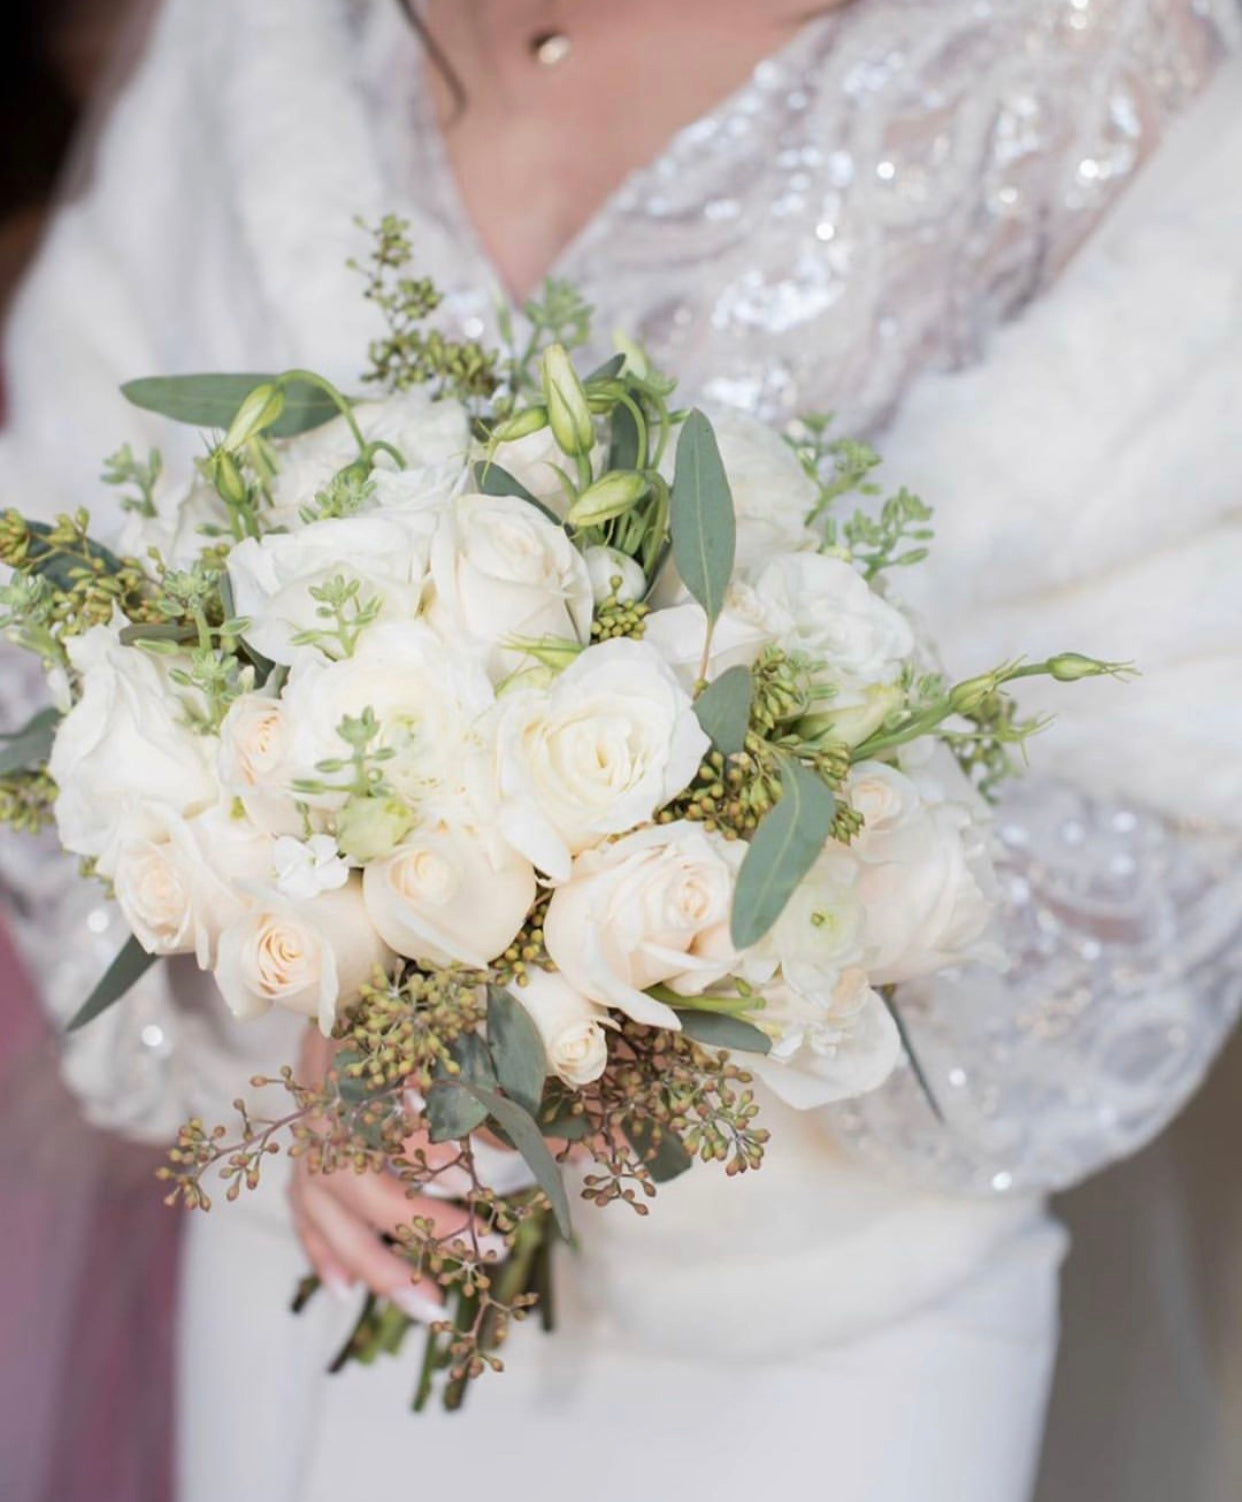 “Irish cream” bridal bouquet